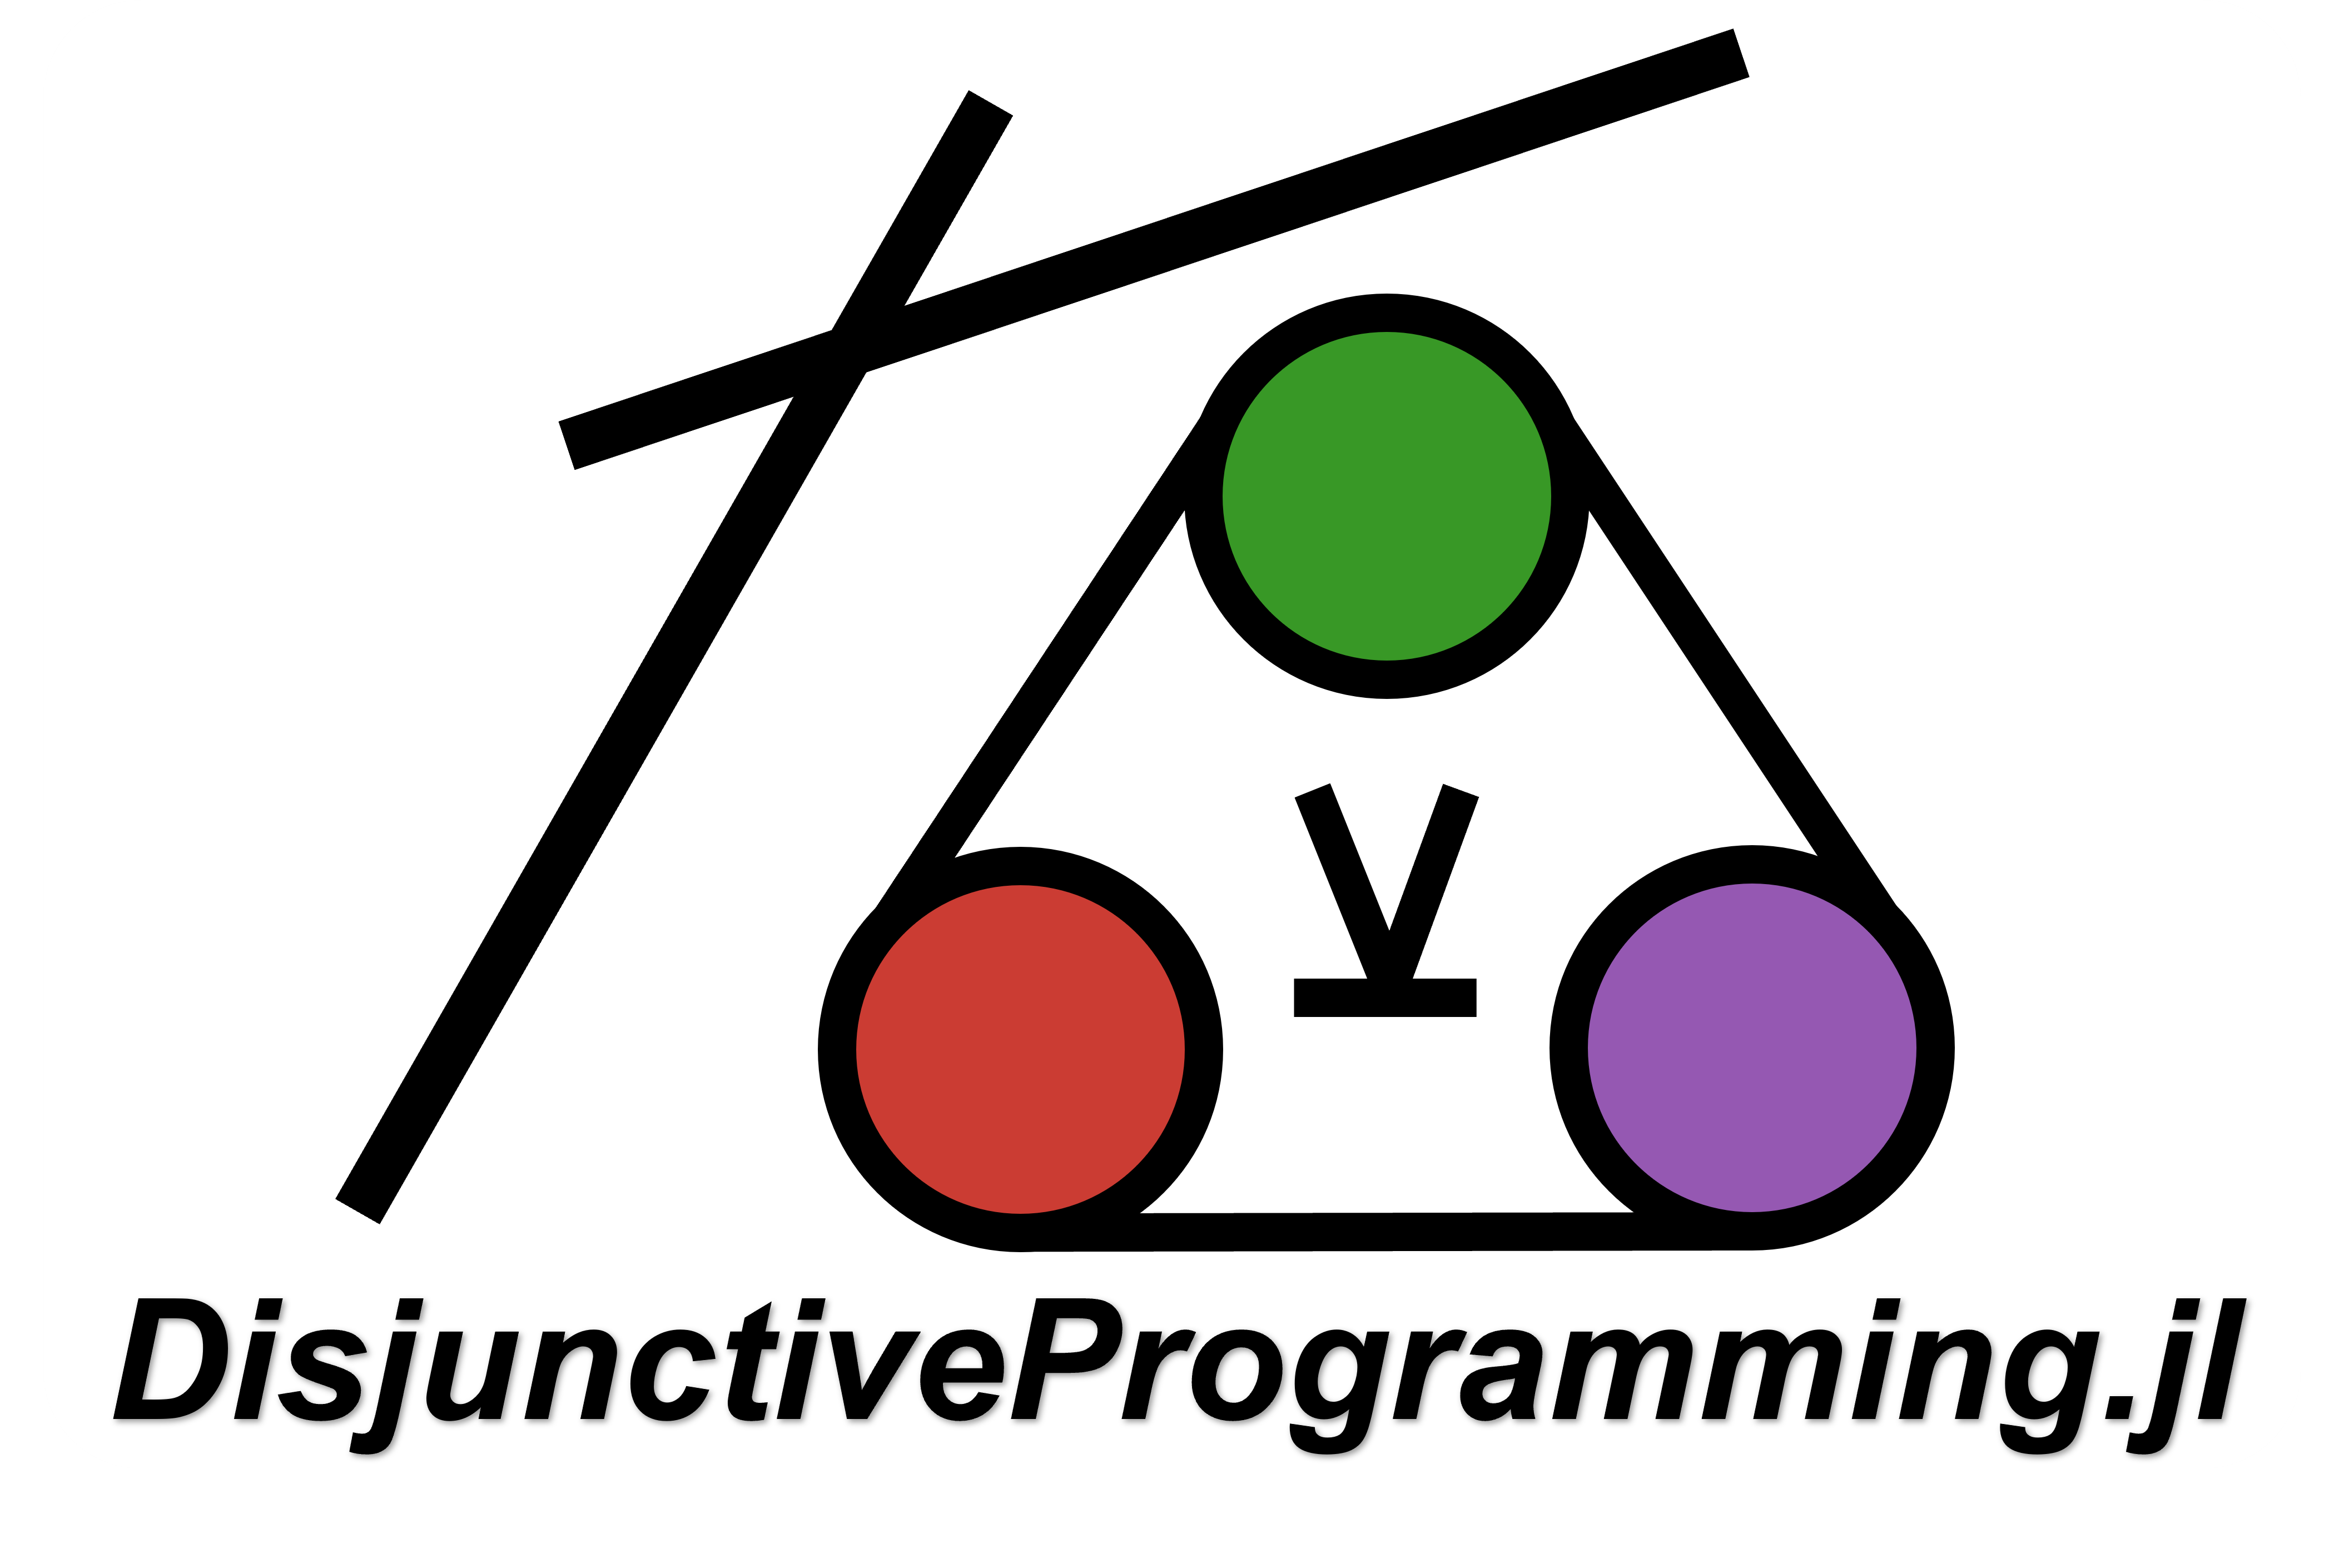 DisjunctiveProgramming.jl logo